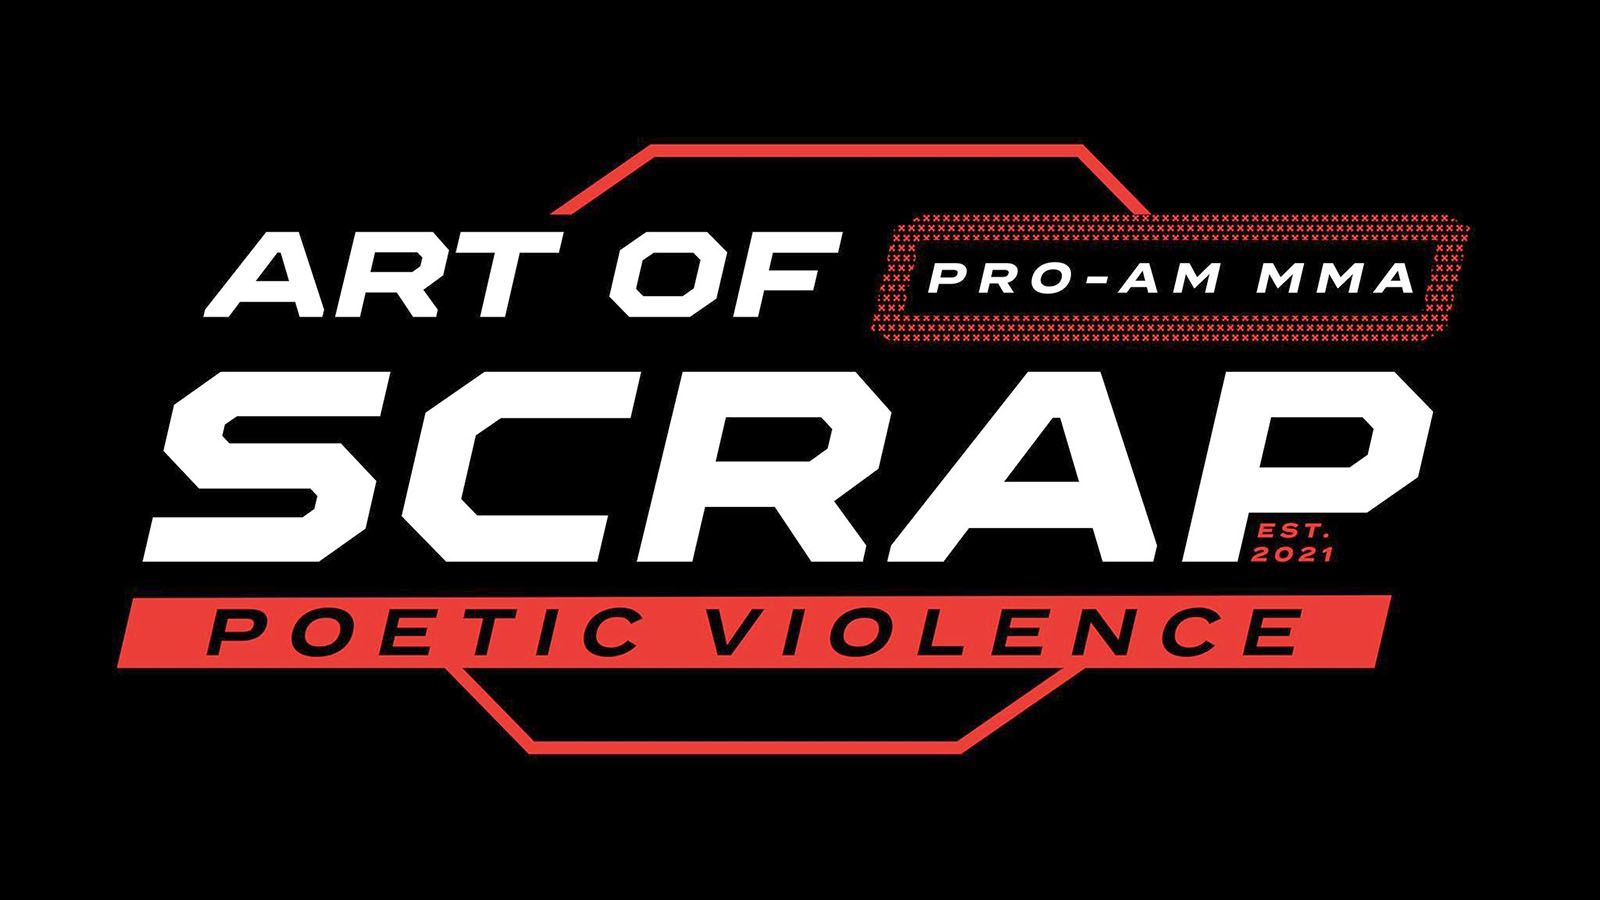 Art of Scrap 7 will be Oct. 7 at Memorial Coliseum.